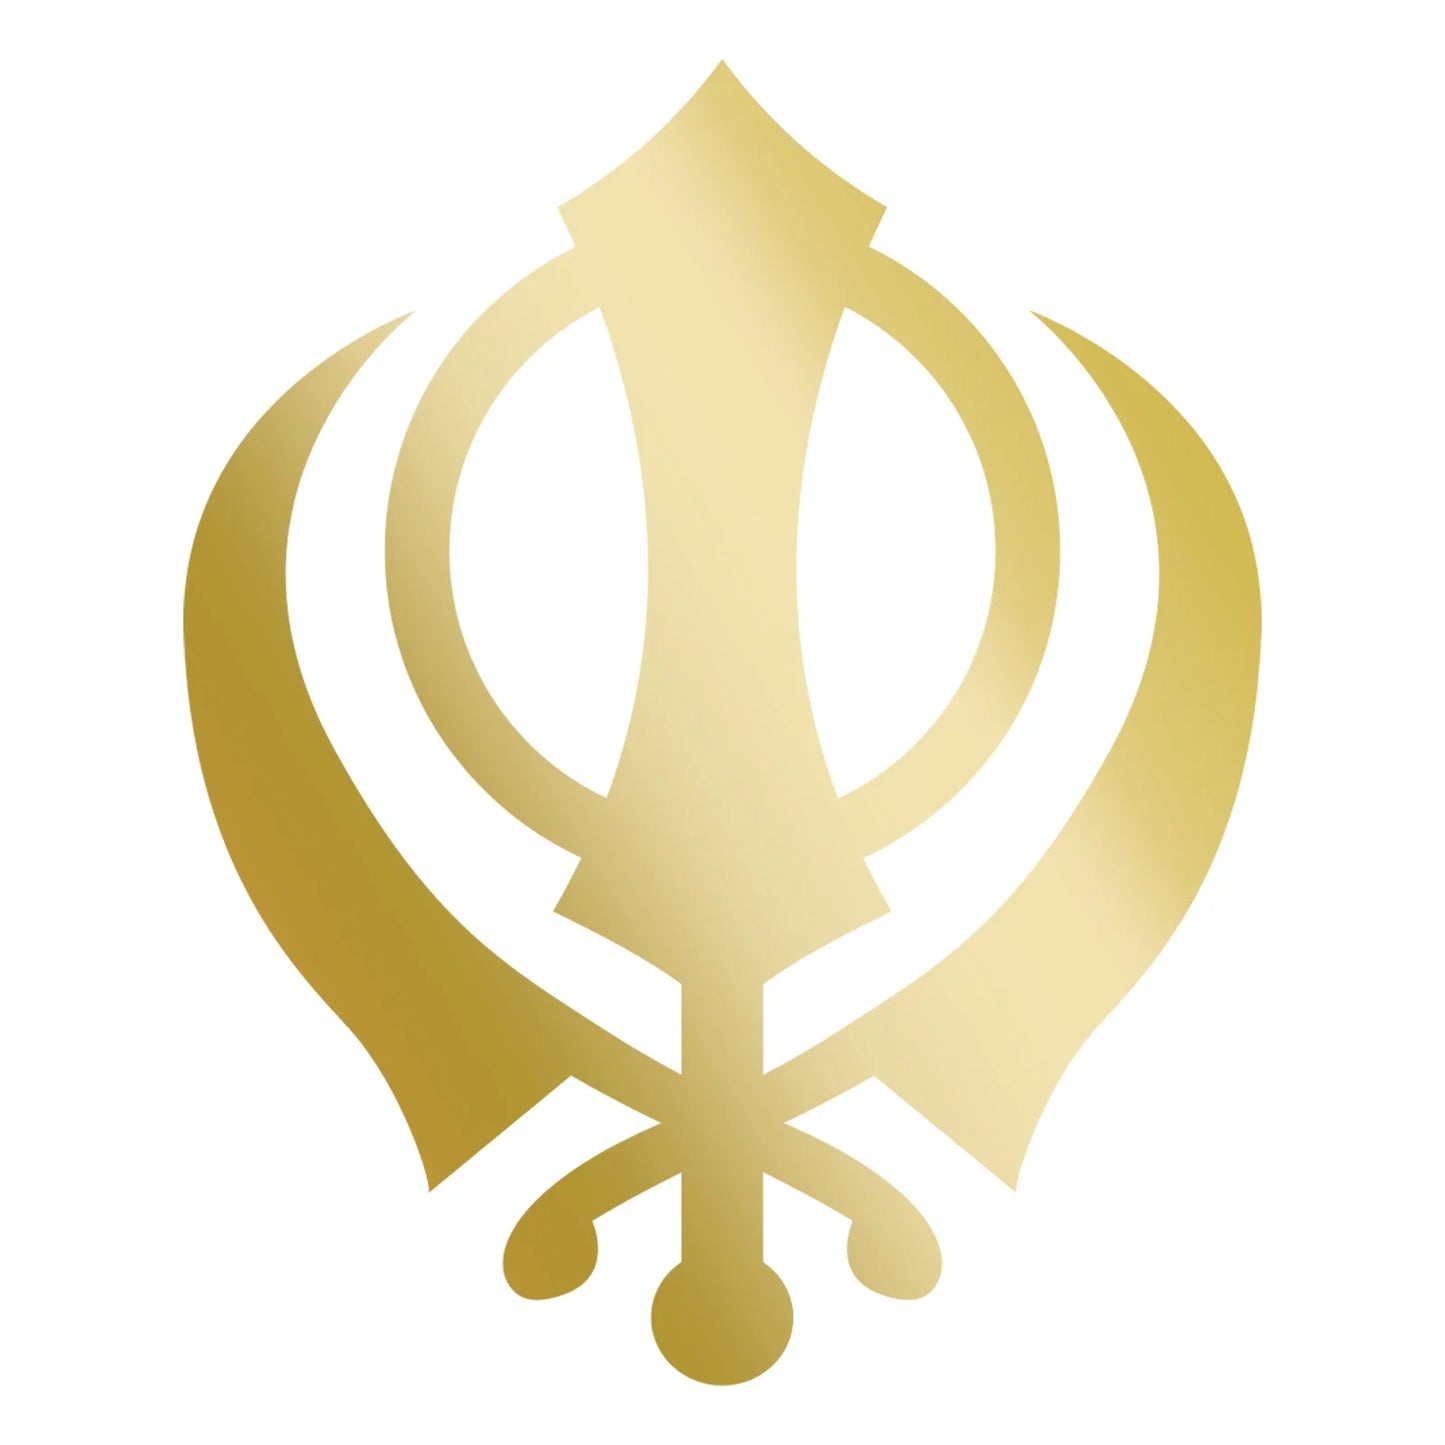 Sikh Khanda Window Sticker in Gold